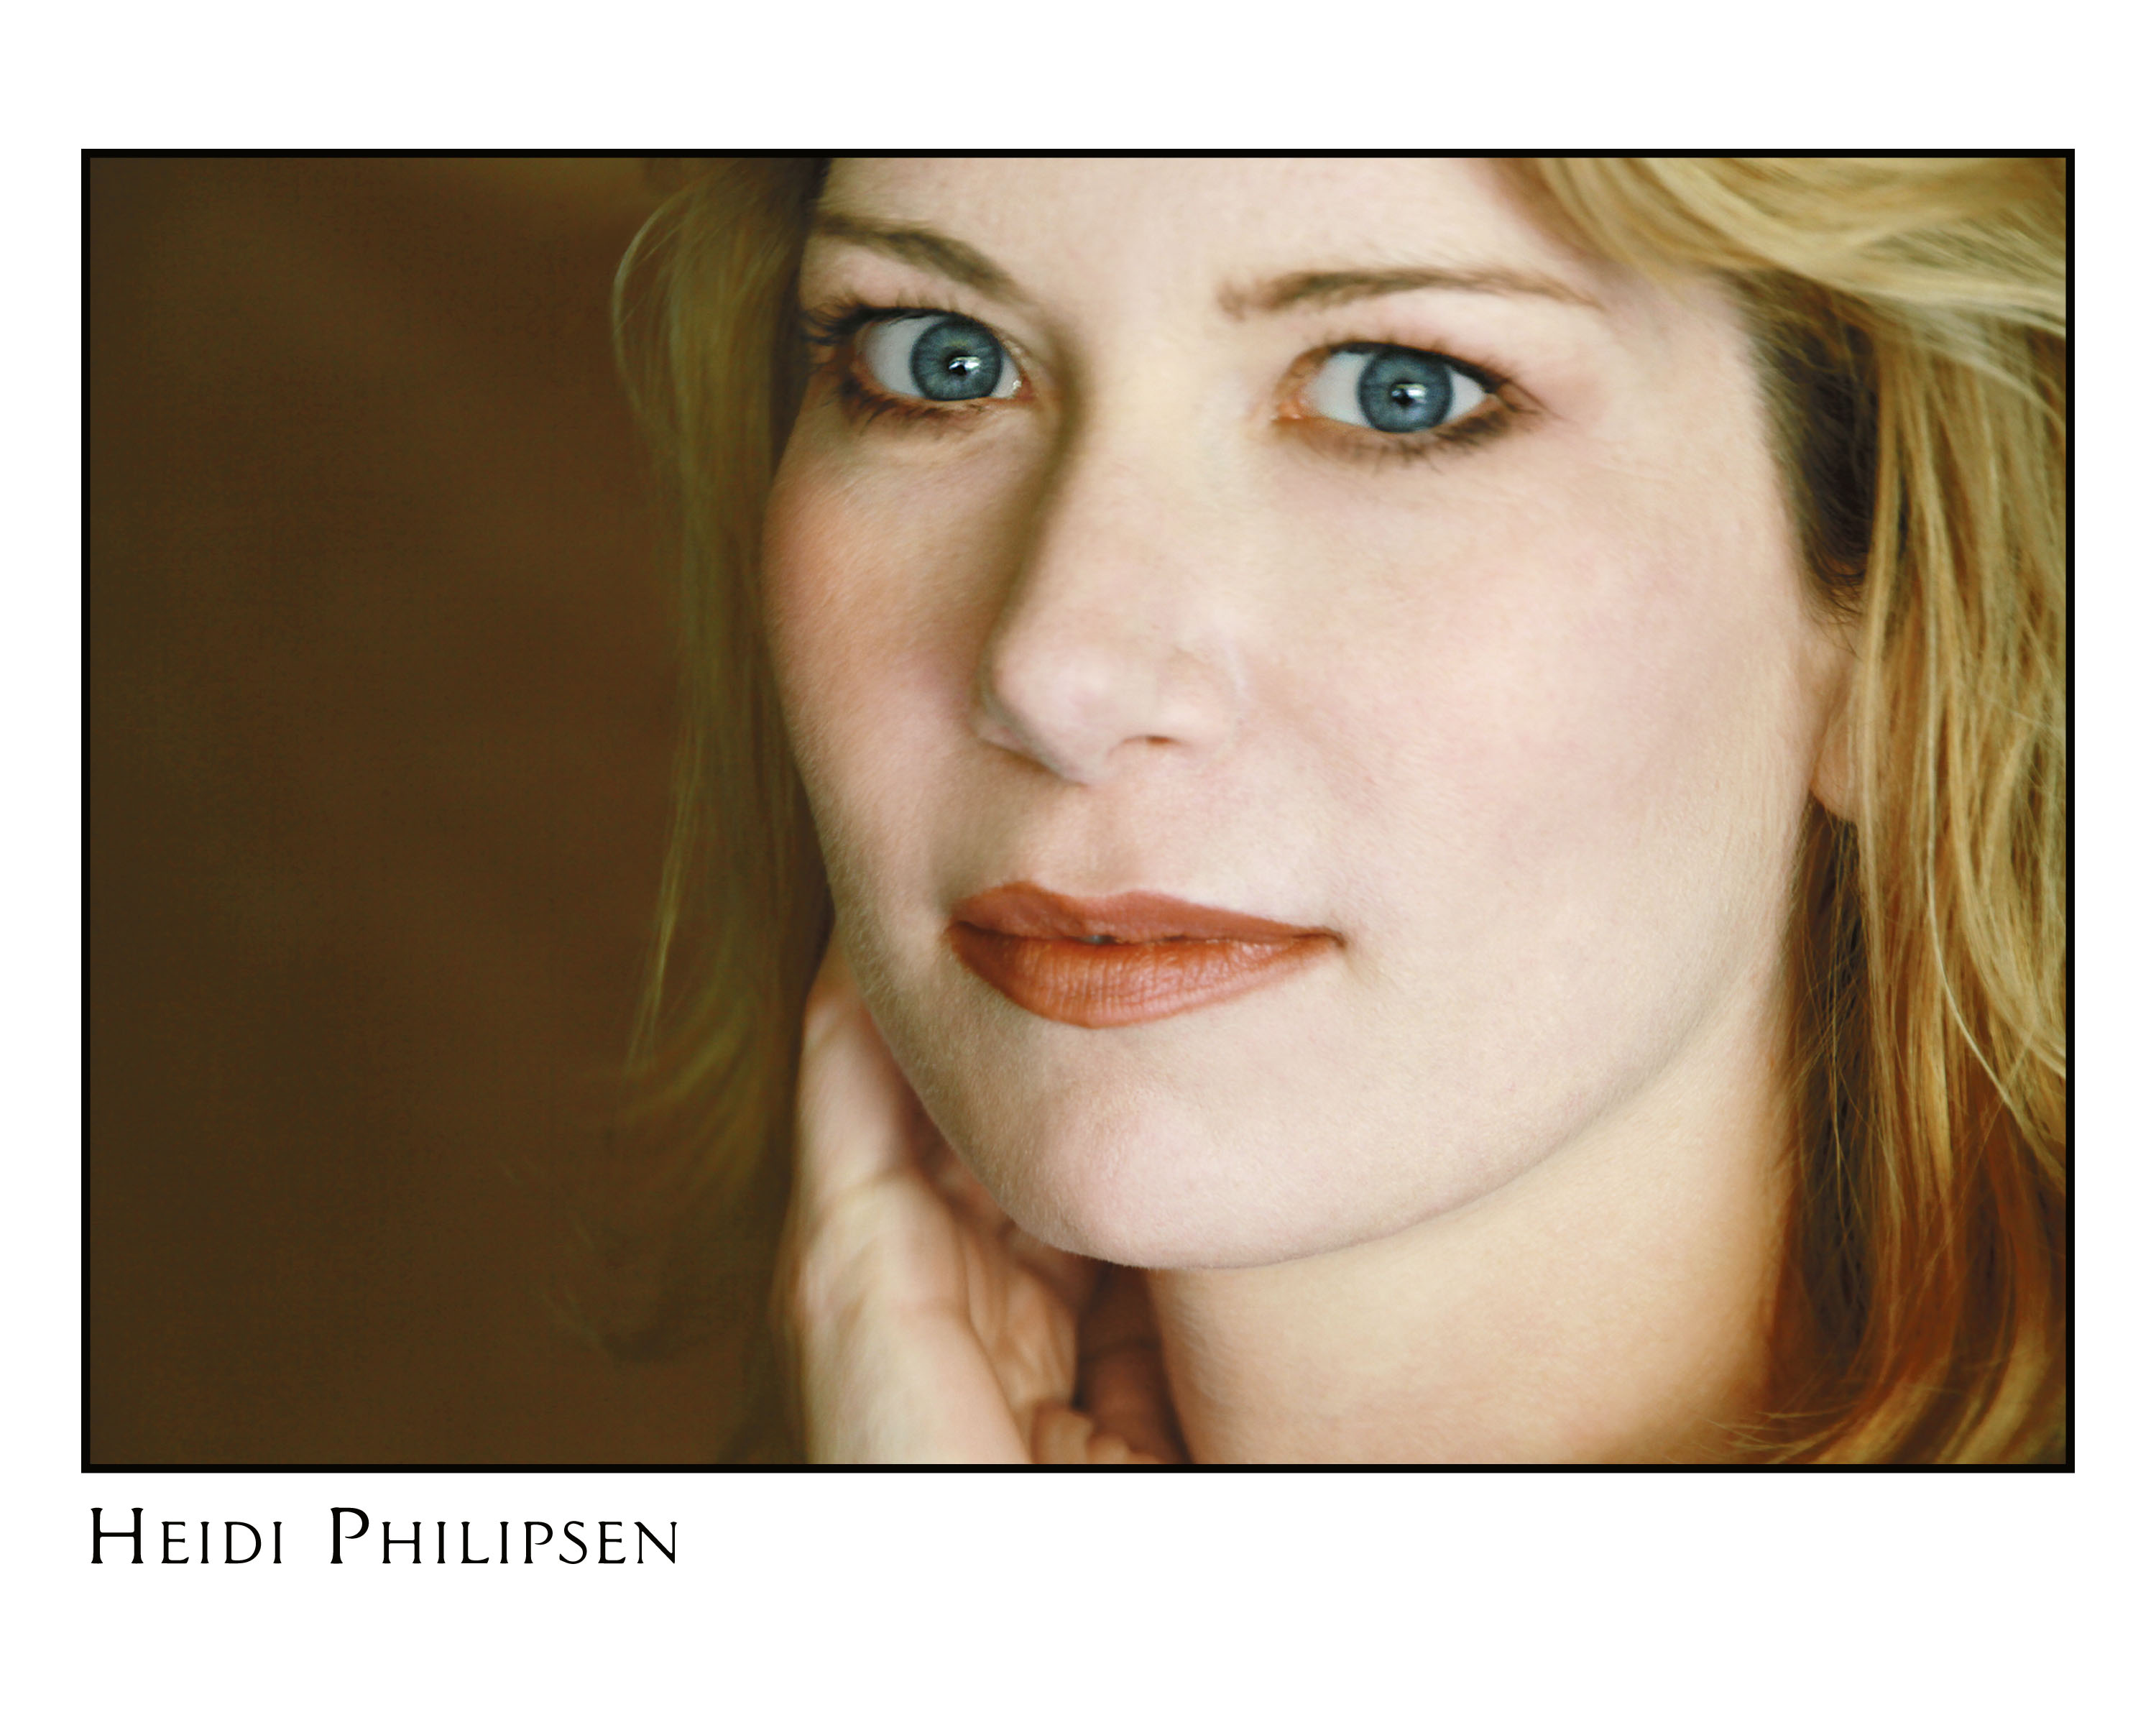 Official Headshot, Heidi Philipsen